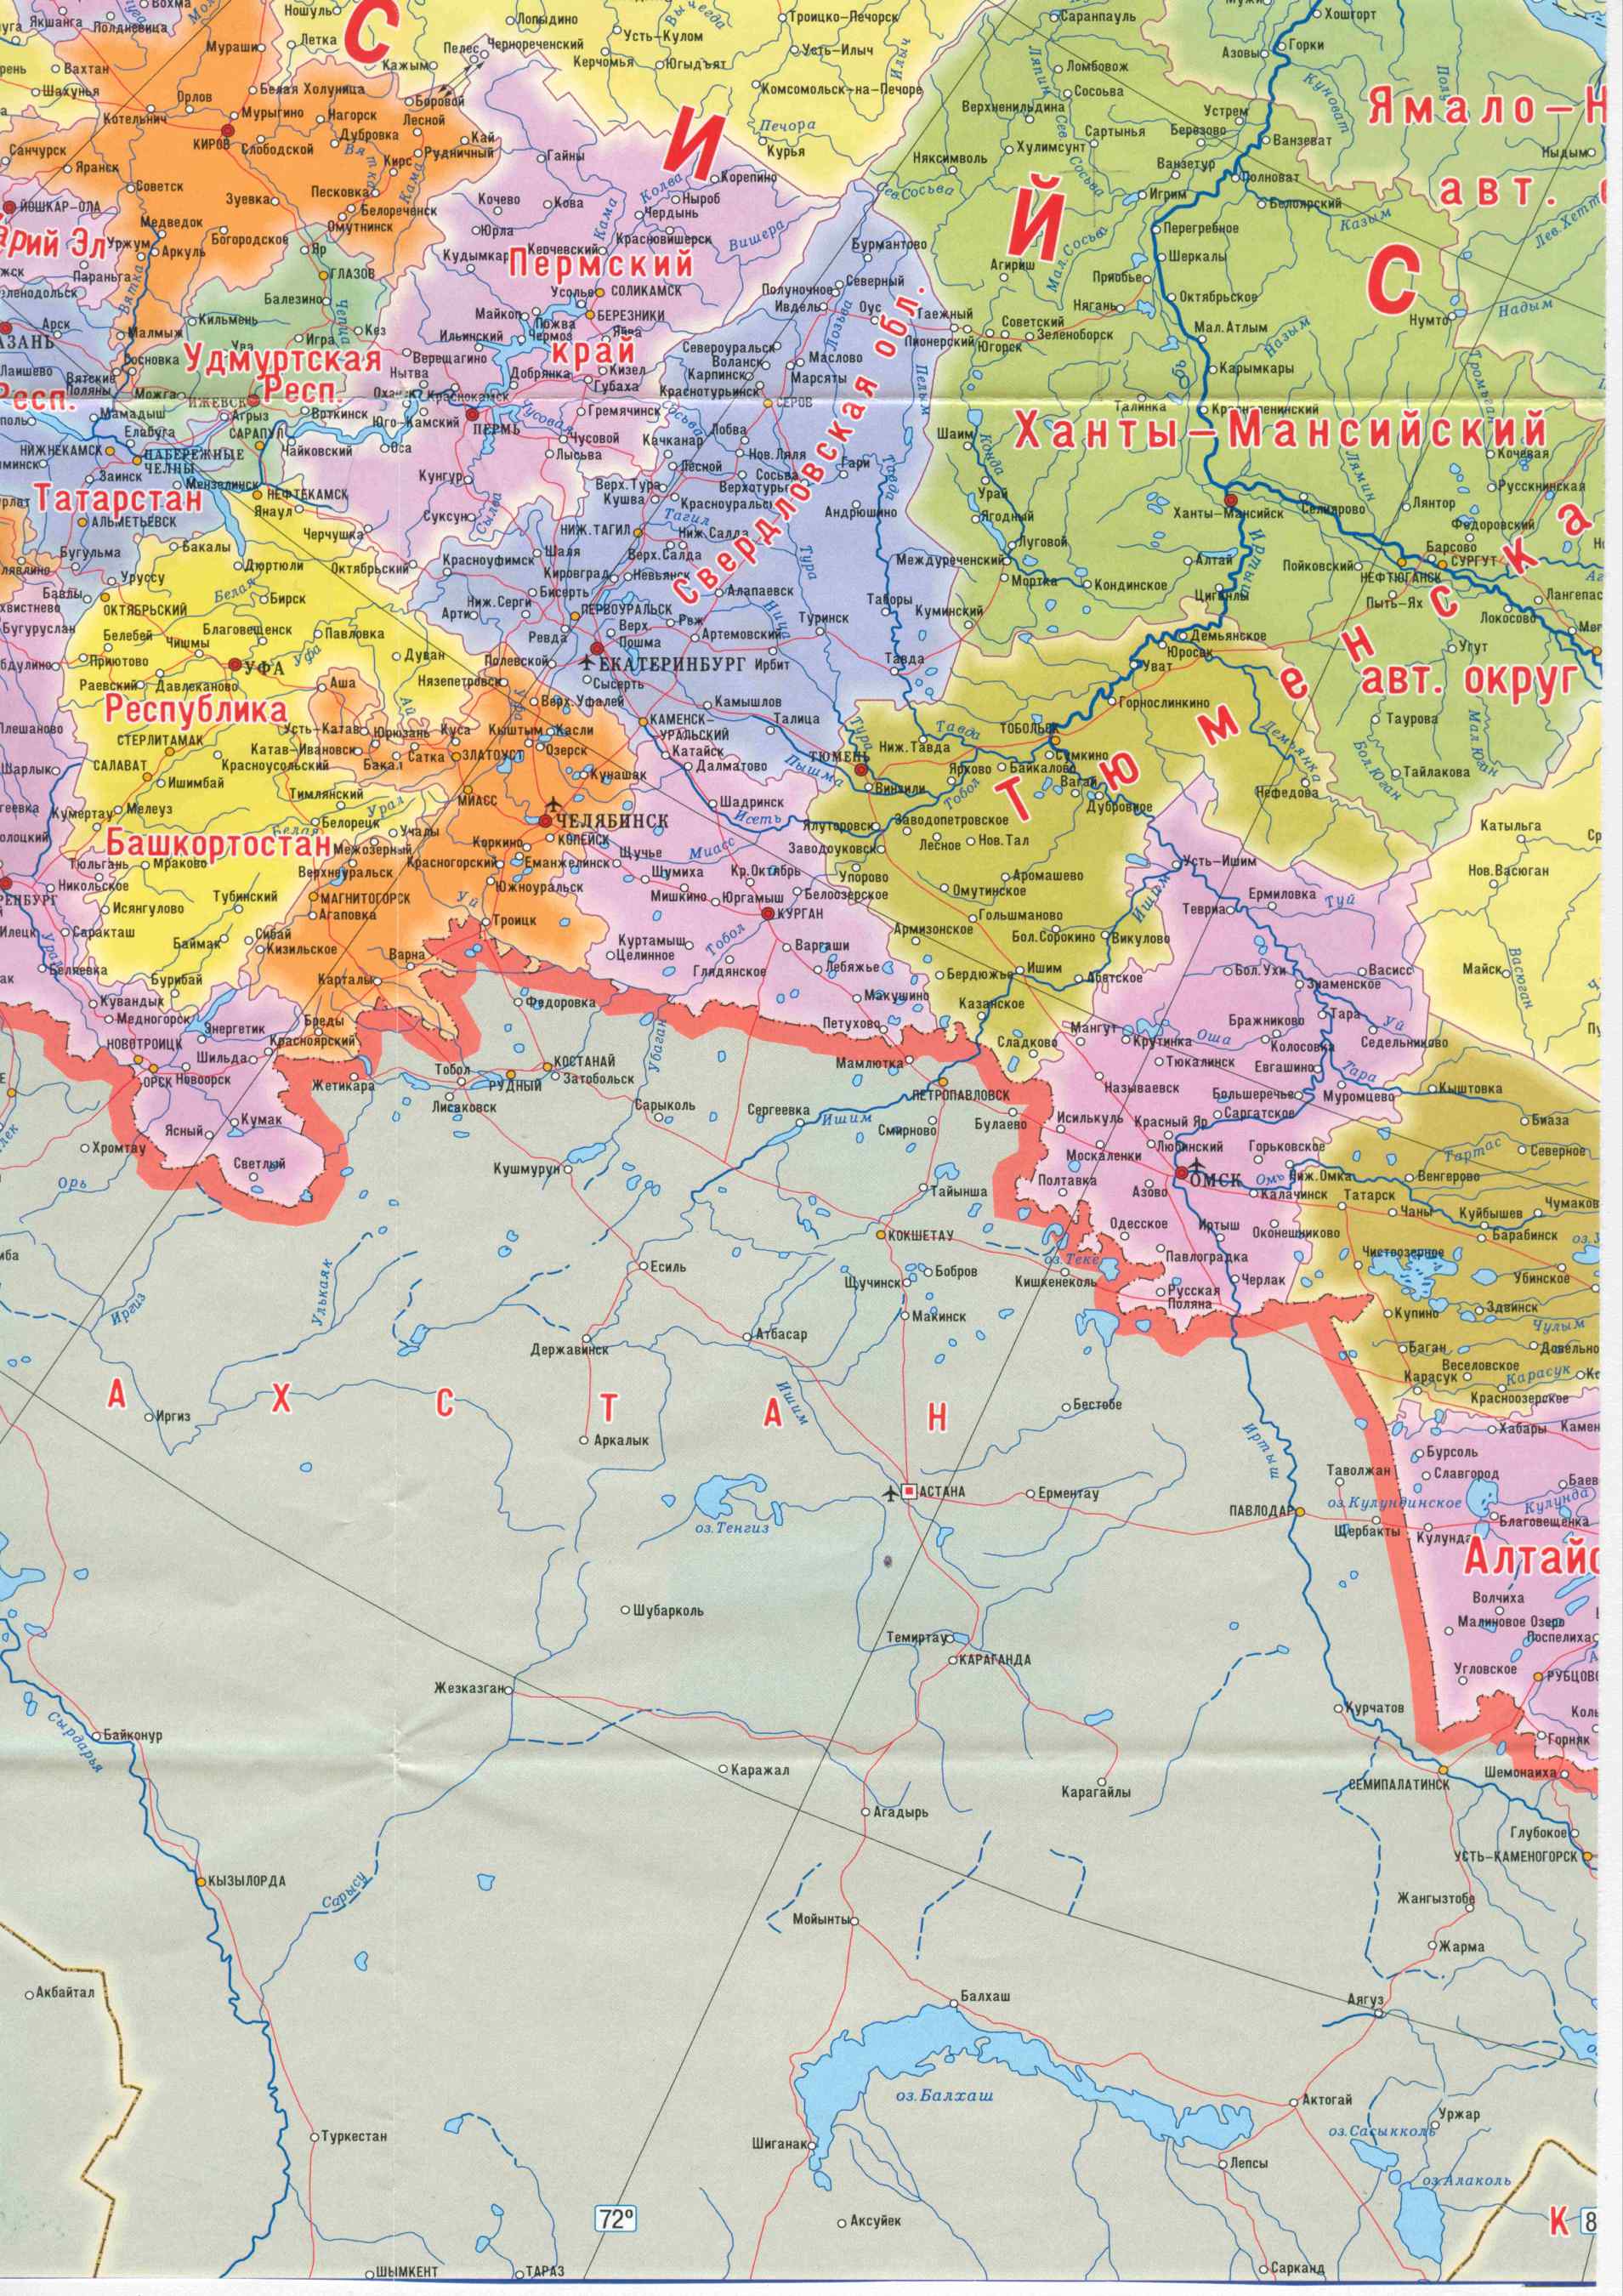  Карта России с областями. Большая подробная карта России. Карта России с областями, республиками и краями, B1 - 